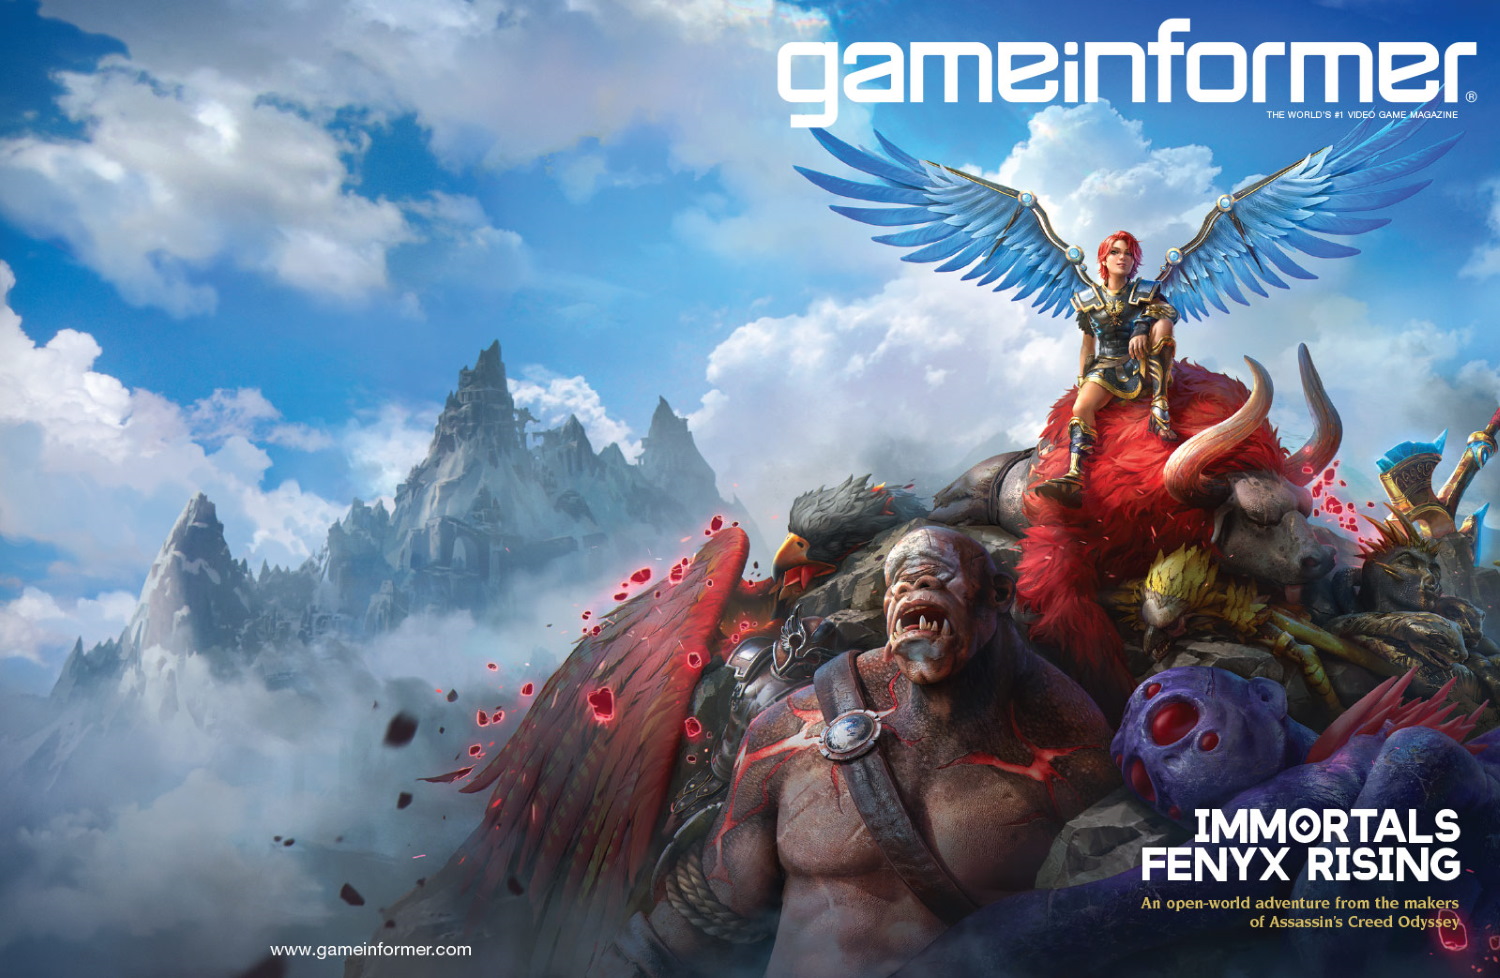 Immortals: Fenyx Rising (PS5)  Immortal, Greek gods, Action adventure